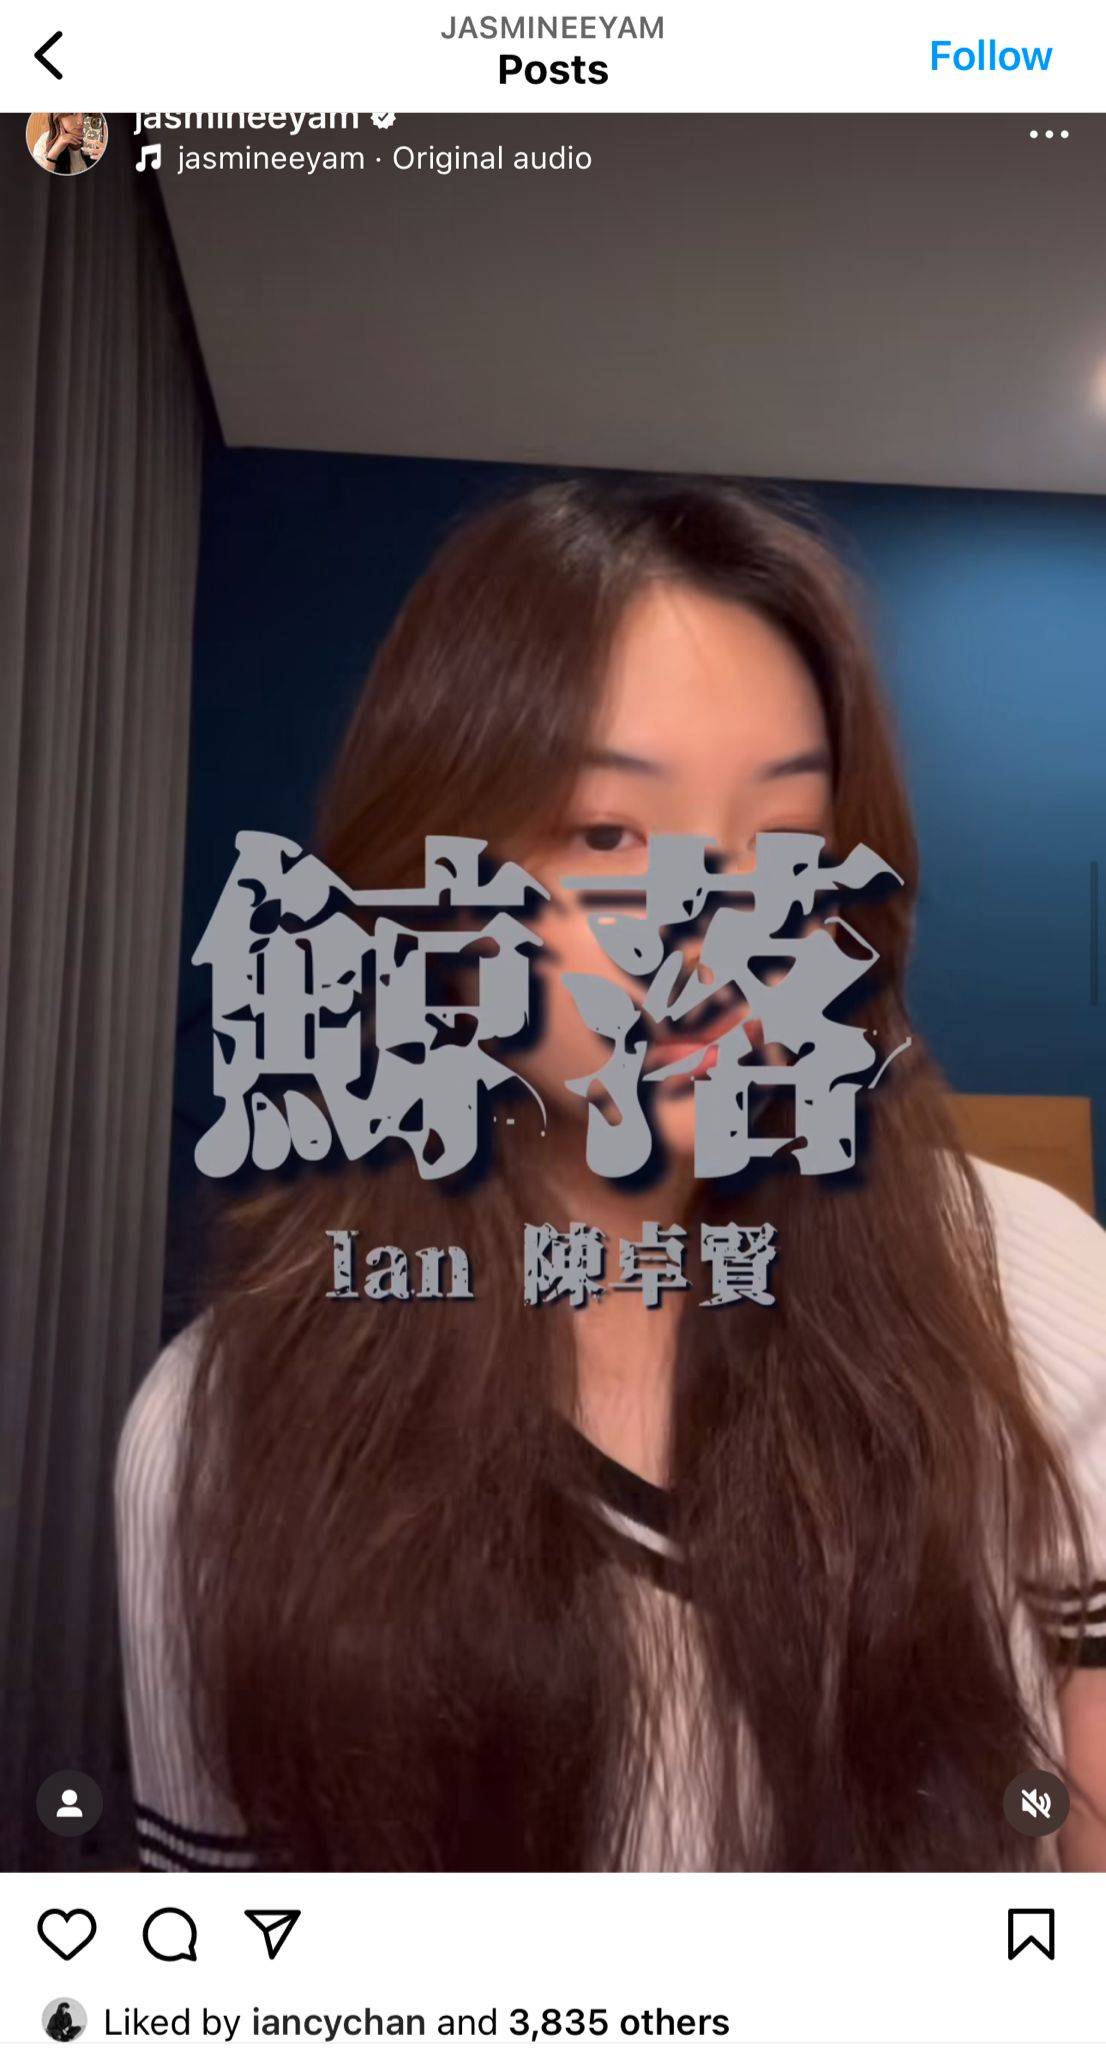 任暟晴 陈卓贤 任暟晴在社交平台上上载了翻唱《鲸落》的影片。